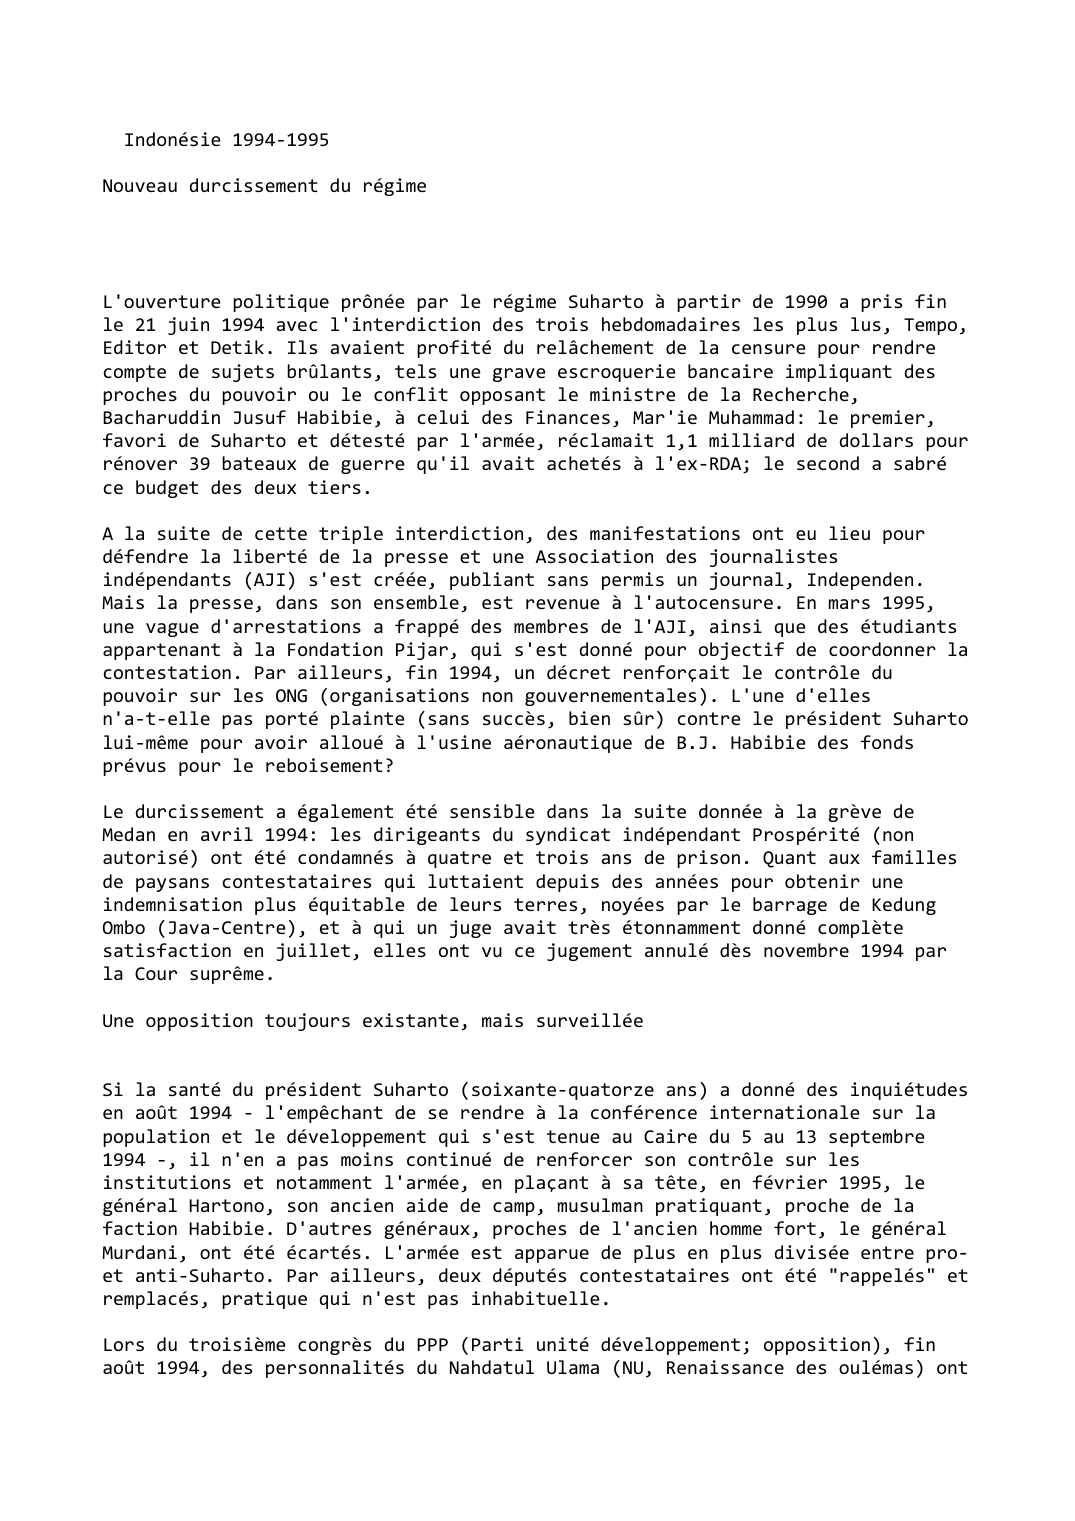 Prévisualisation du document Indonésie (1994-1995)

Nouveau durcissement du régime